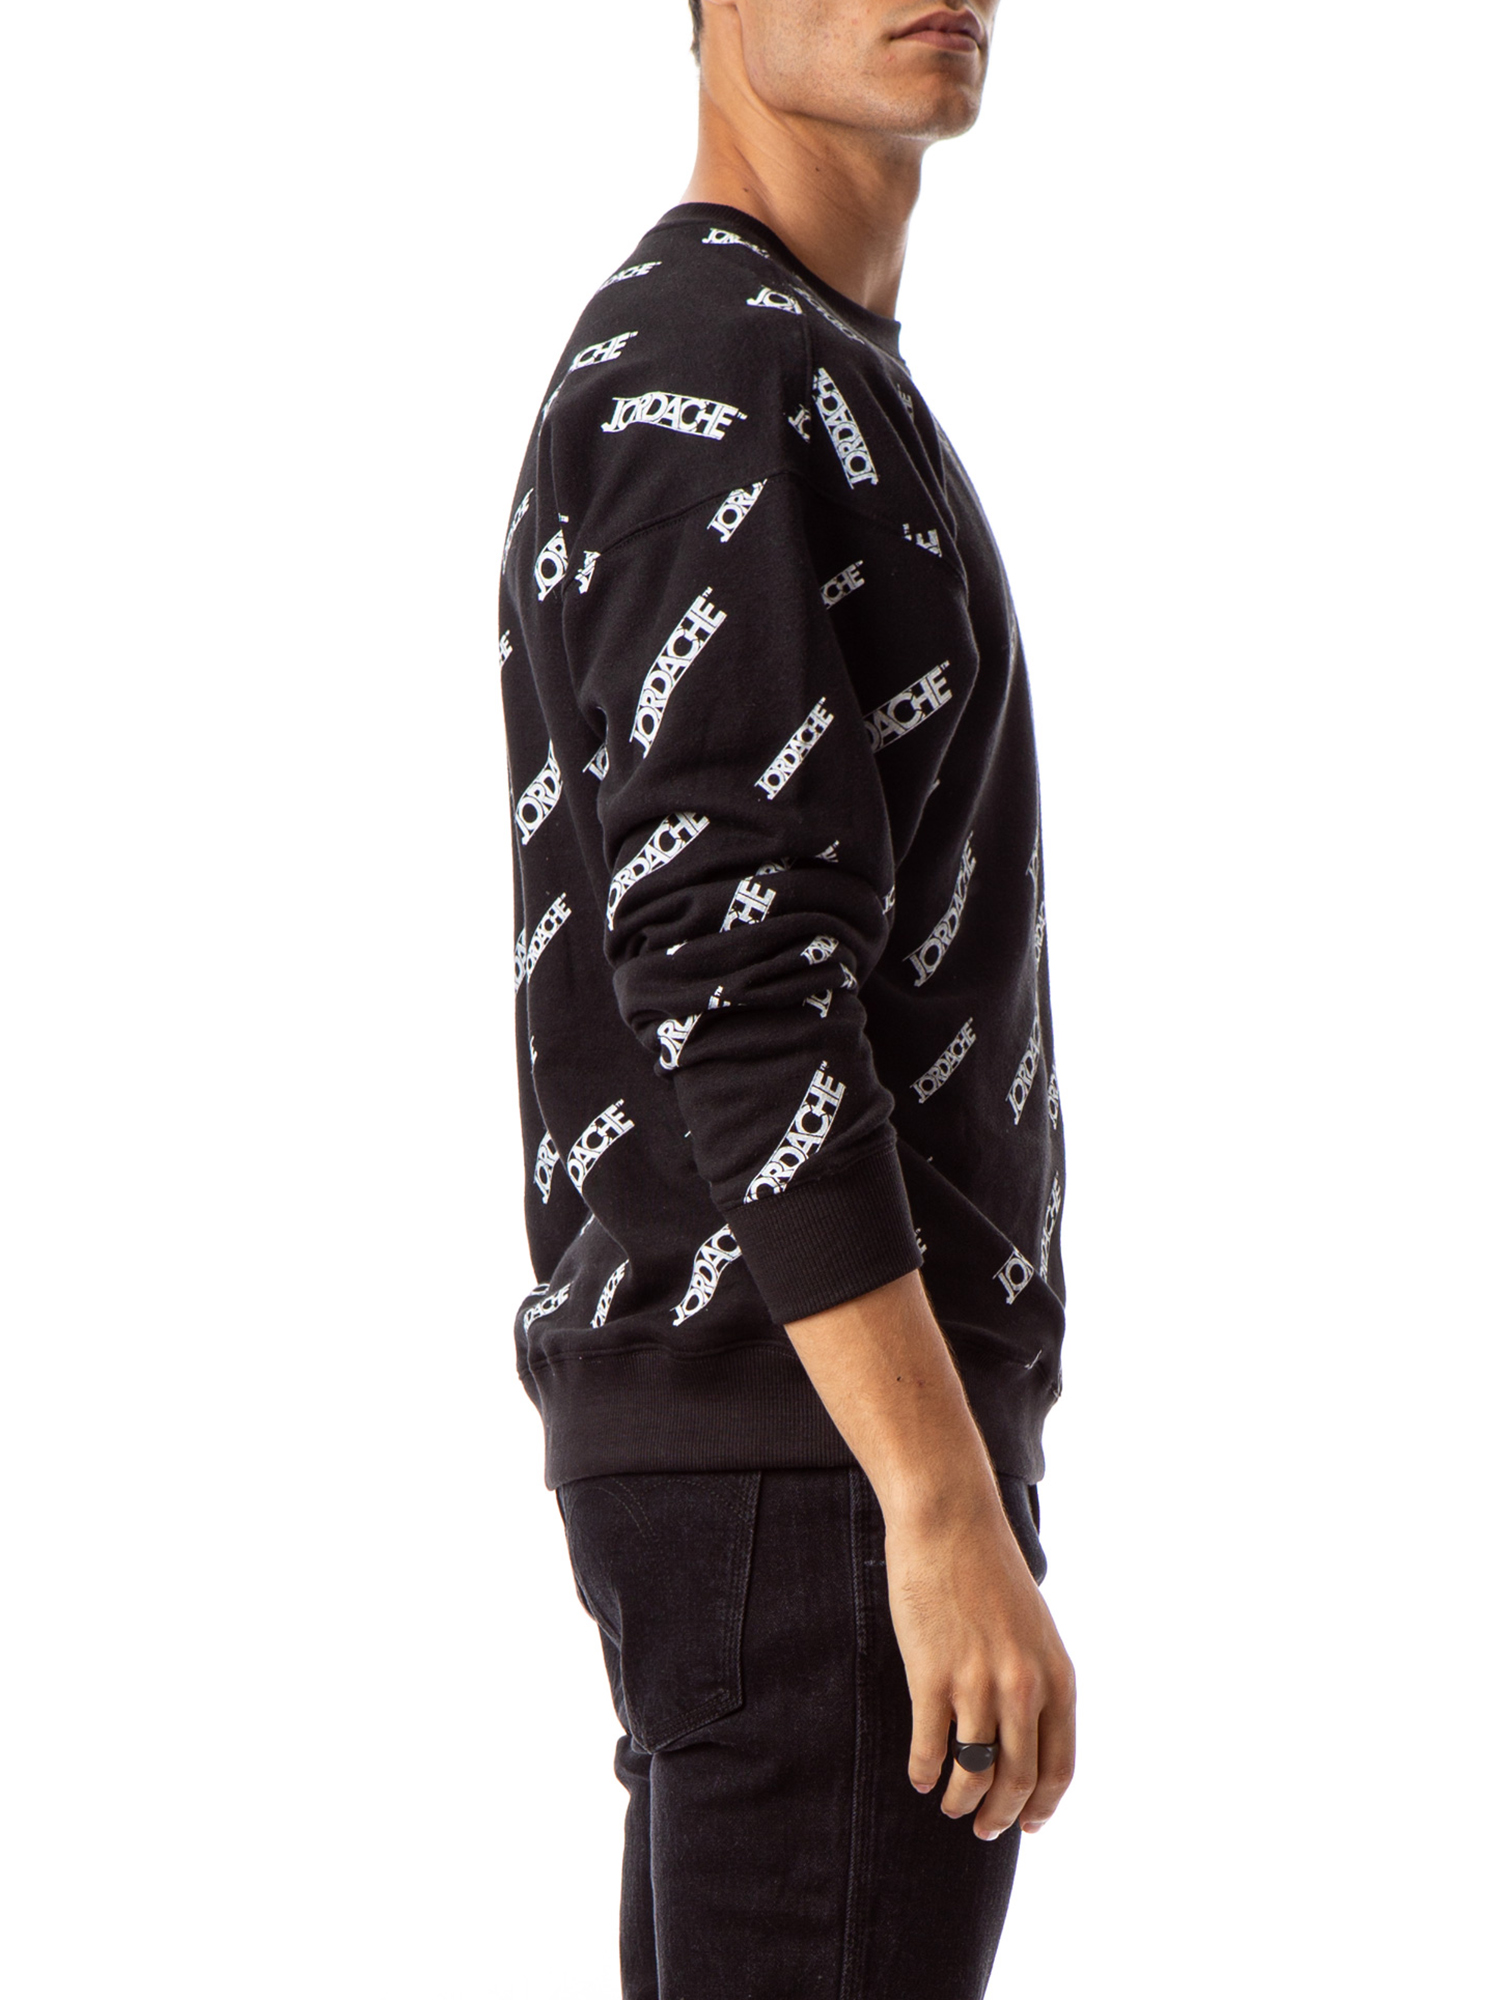 Jordache Vintage Men's Alex Crewneck Sweatshirt, Sizes S-2XL - image 5 of 8